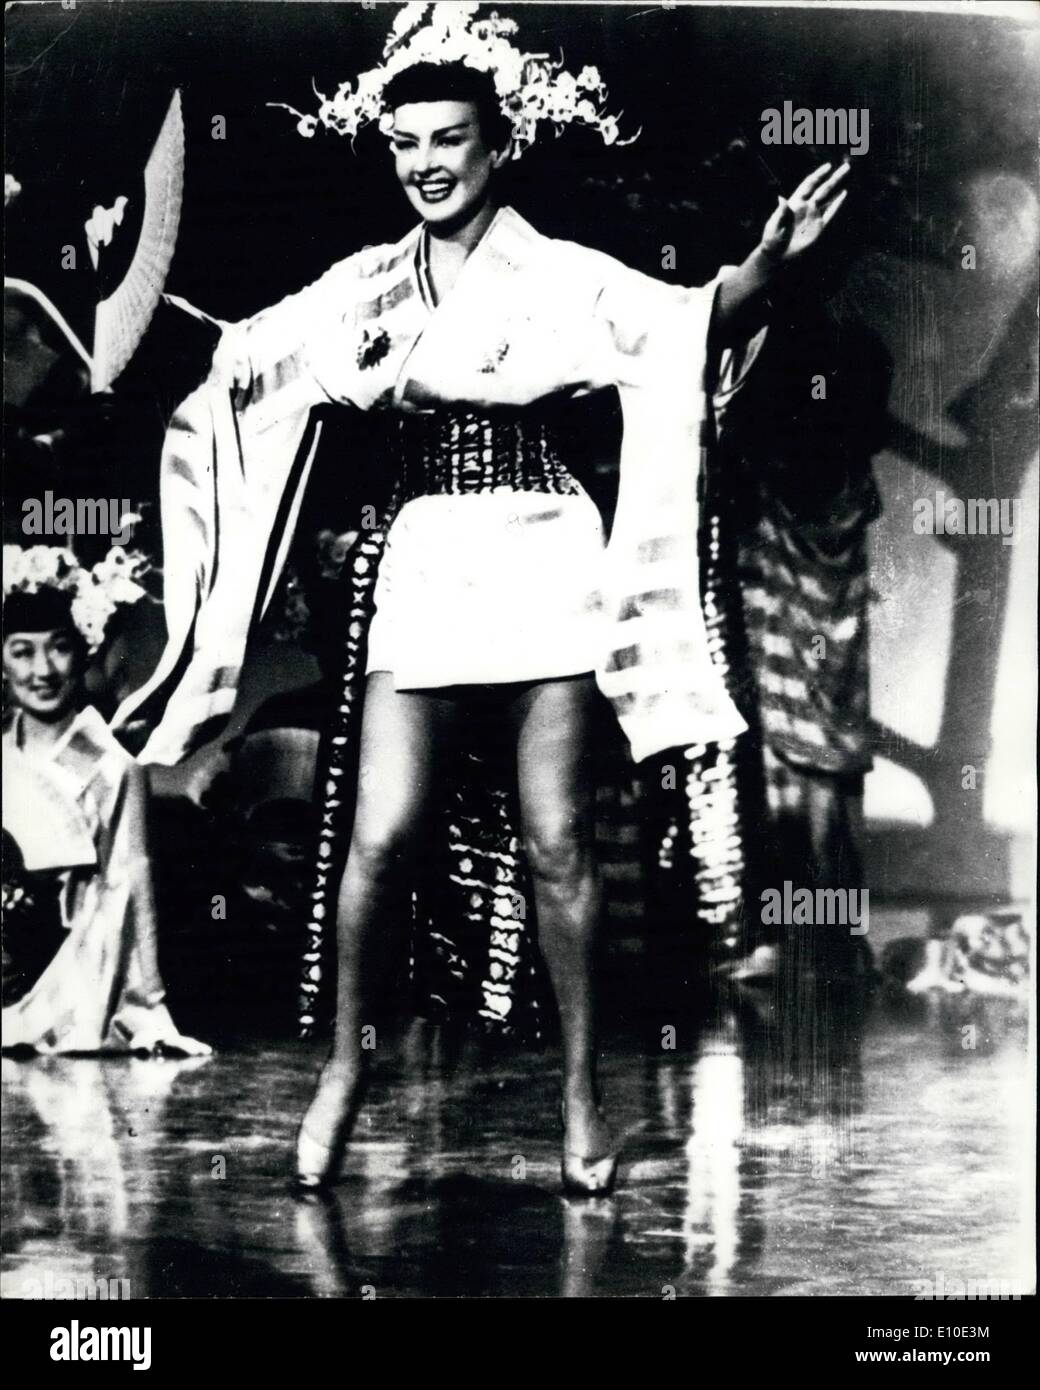 5. Mai 1972 - Betty Grable '' ernsthaft krank '': Betty Grable, bemerkte die Hollywood-Star der 40er Jahre für ihre wohlgeformten Beine, schwer krank, australische Theaterproduzenten Michael Edgley in Melbourne heute gesagt wird. H hatte, dass die Krankheit nach ihrem Arzt war eine Frage von einem Leben und Tod, zwang sie, einen geplanten australischen Besuch in No No Nanette erscheinen zu stornieren. Betty ist 55. Herr Edgley sagte, dass ihr jetzt amerikanische Tänzerin Cyd Charisse Rolle spielen würde. Foto zeigt Betty Grable als Geisha Girl in dem Film '' Call Me Mister''--im Jahr 1951. Stockfoto